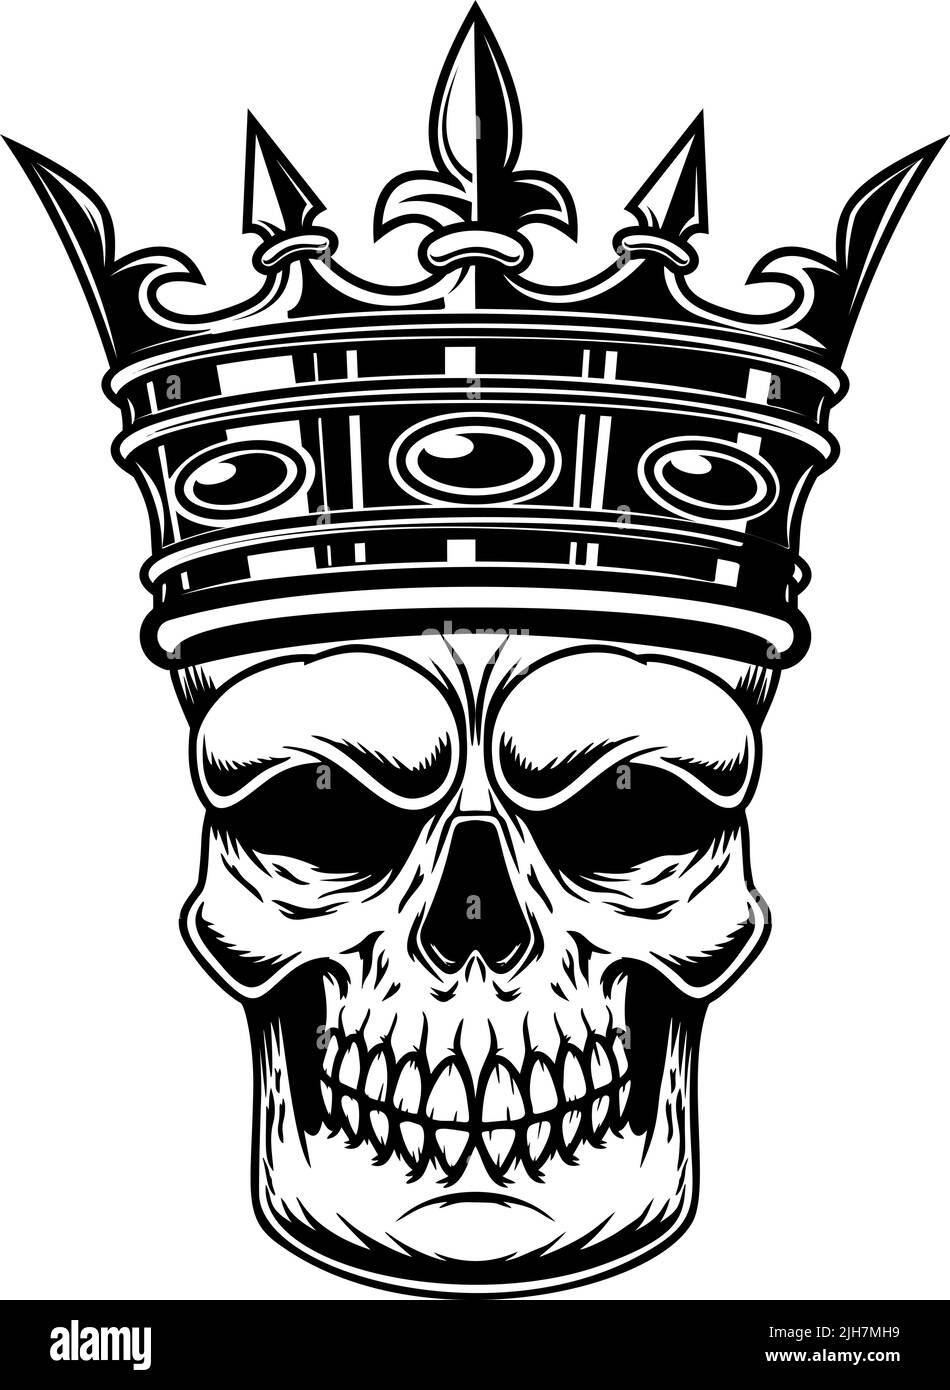 Skull with king crown. Design element for logo, label, sign, emblem. Vector illustration Stock Vector